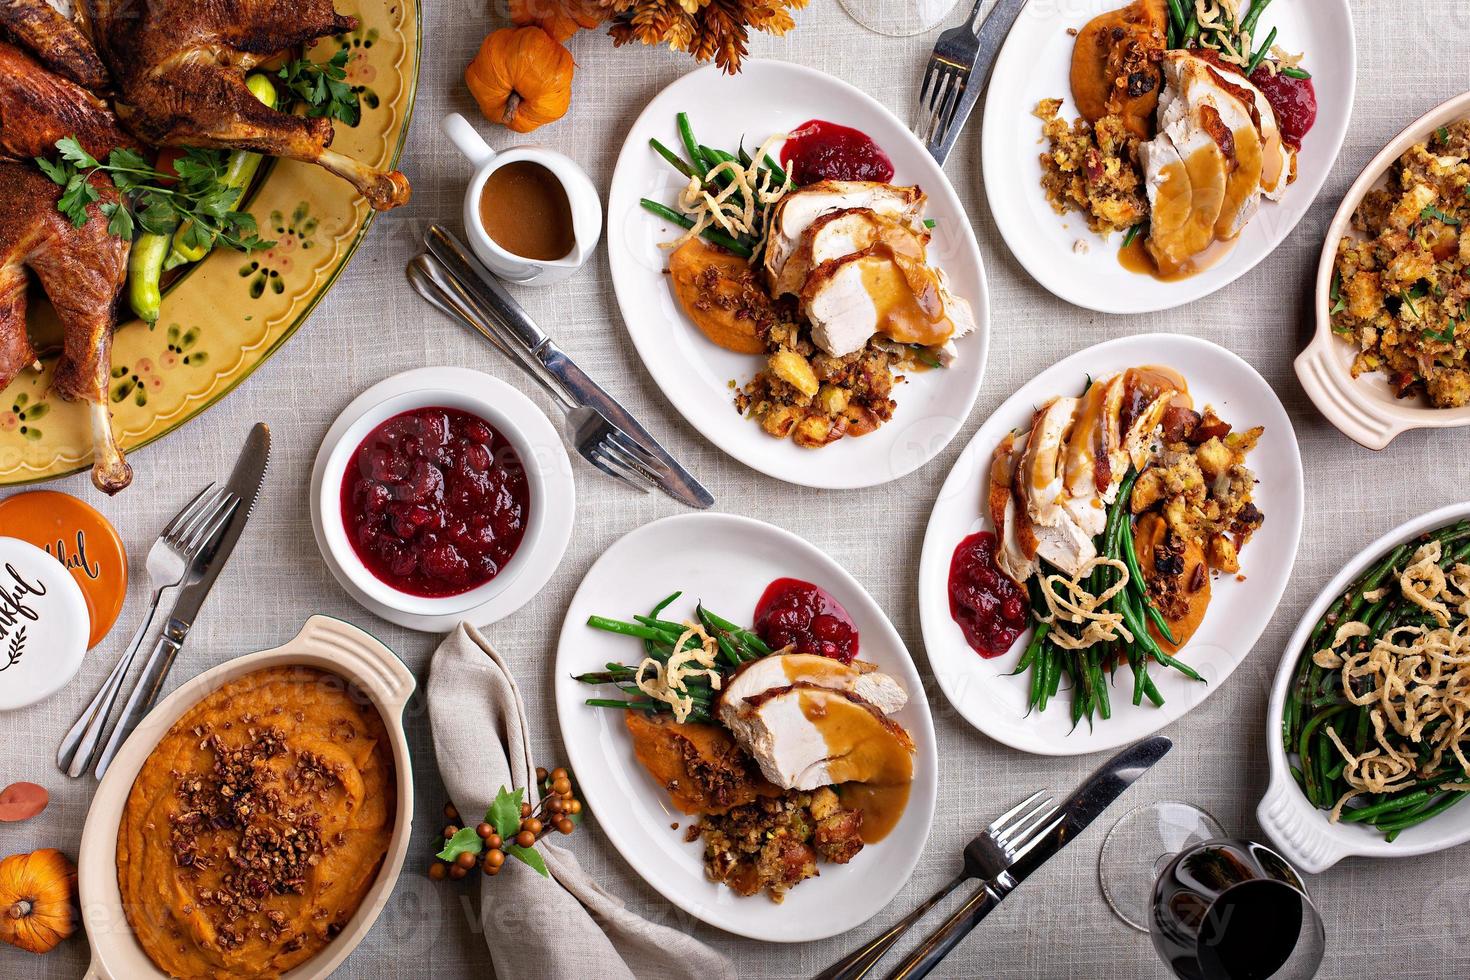 festlicher Thanksgiving-Esstisch mit Tellern mit Essen foto